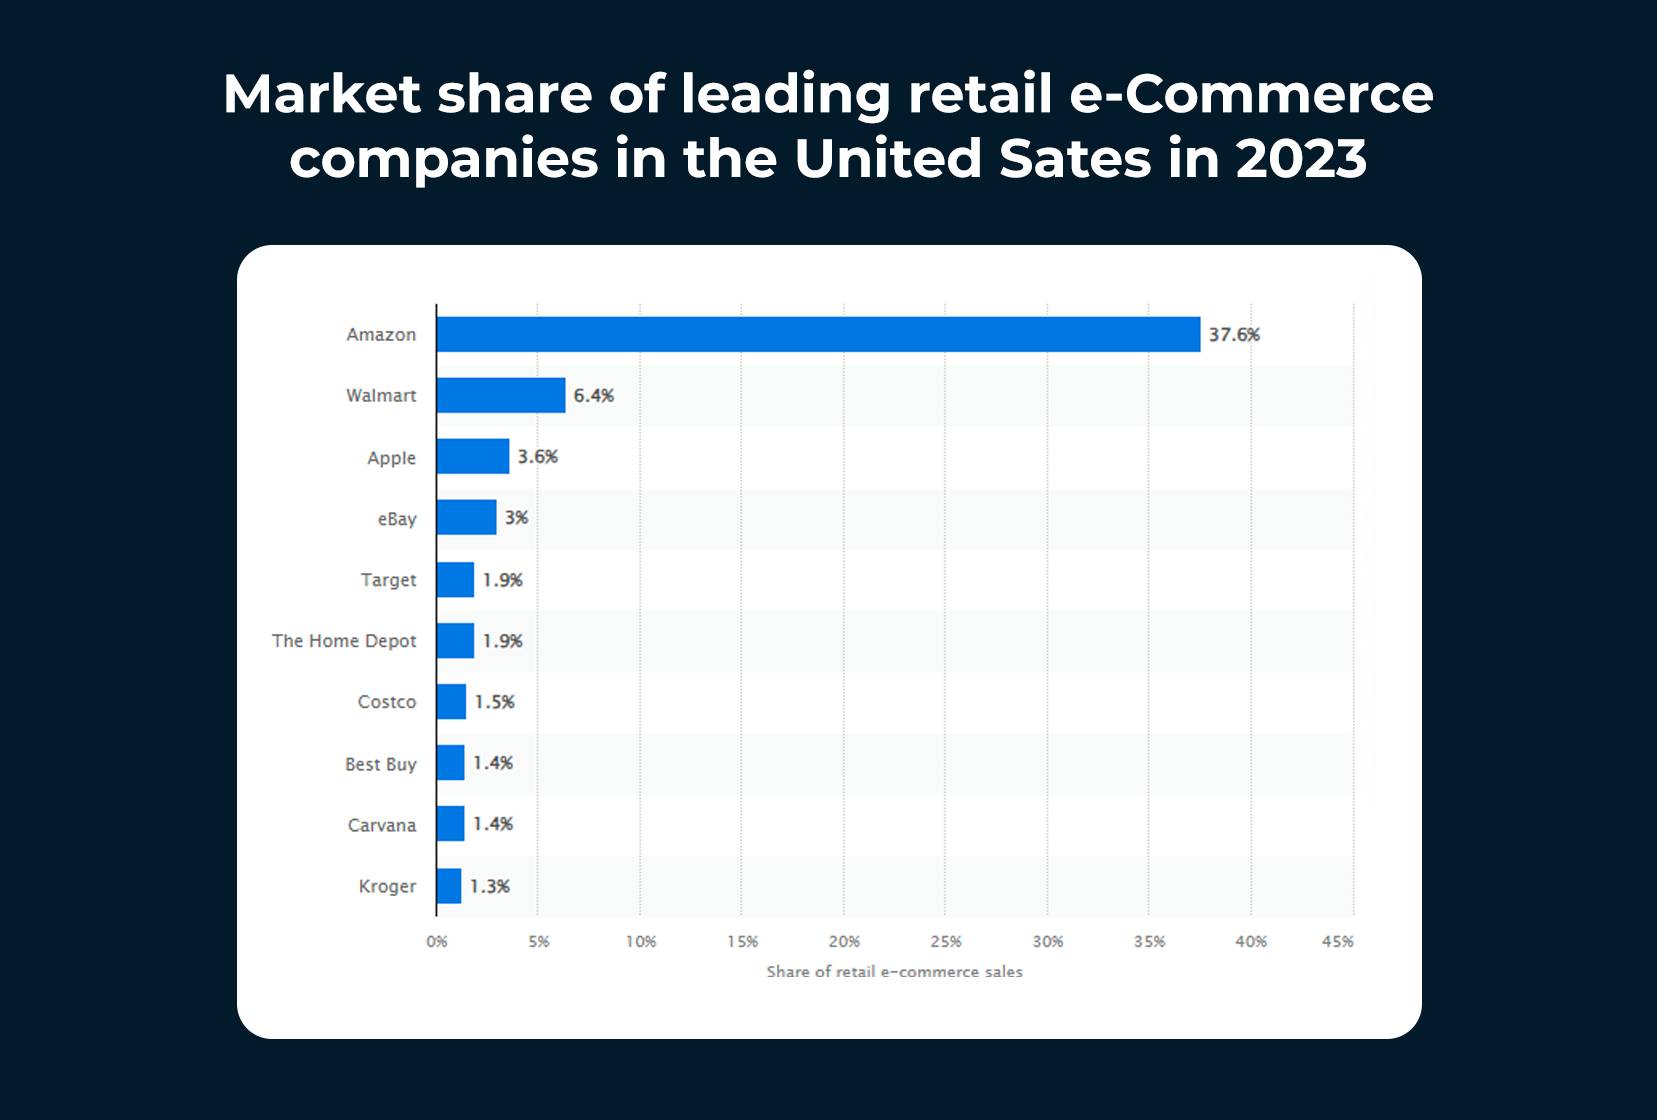 ABD'deki önde gelen perakende e-Ticaret İşletmelerinin pazar payı